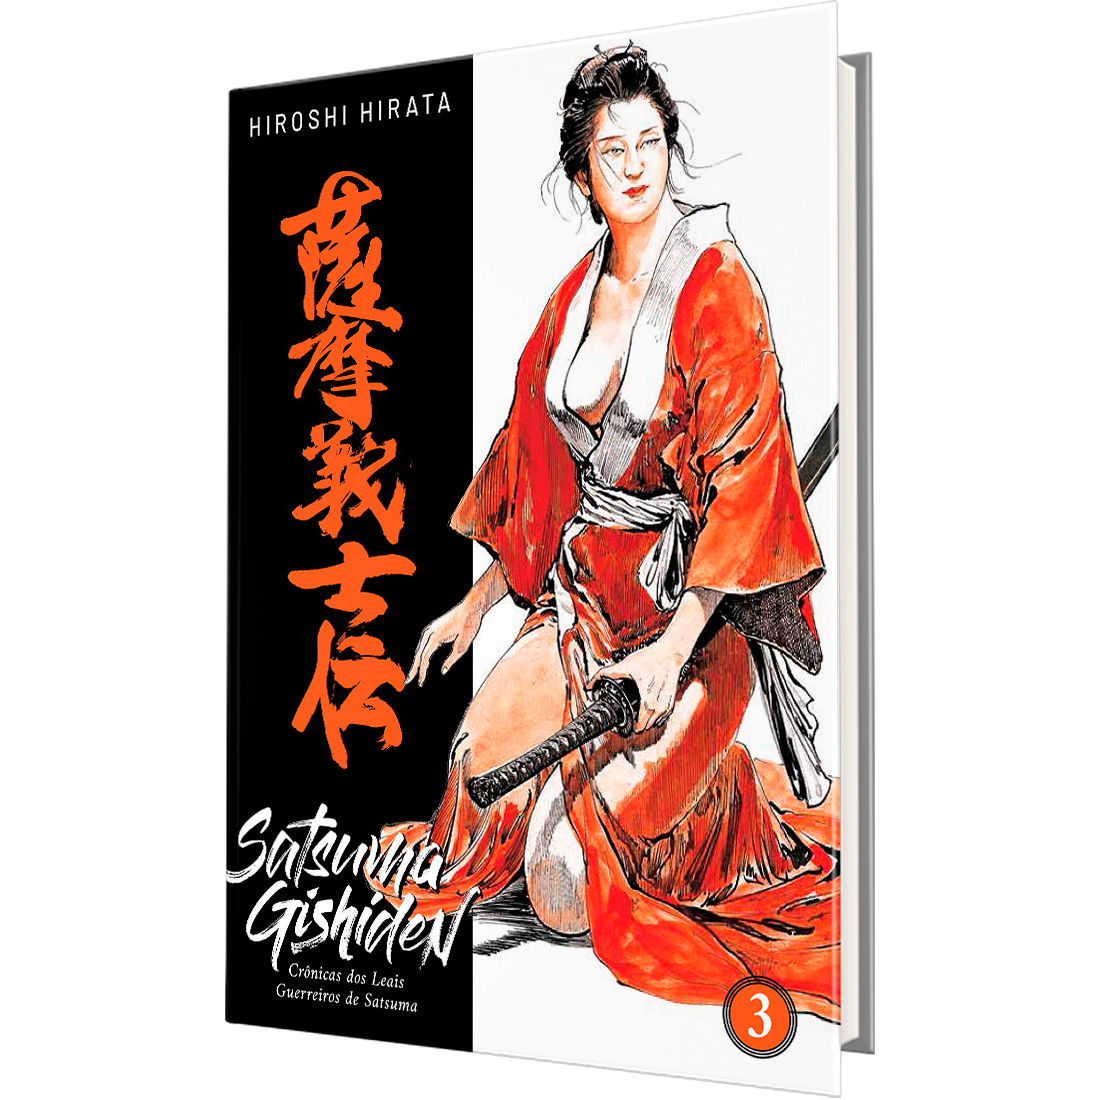 Satsuma Gishiden - Crônicas dos Leais Guerreiros de Satsuma Vol. 3